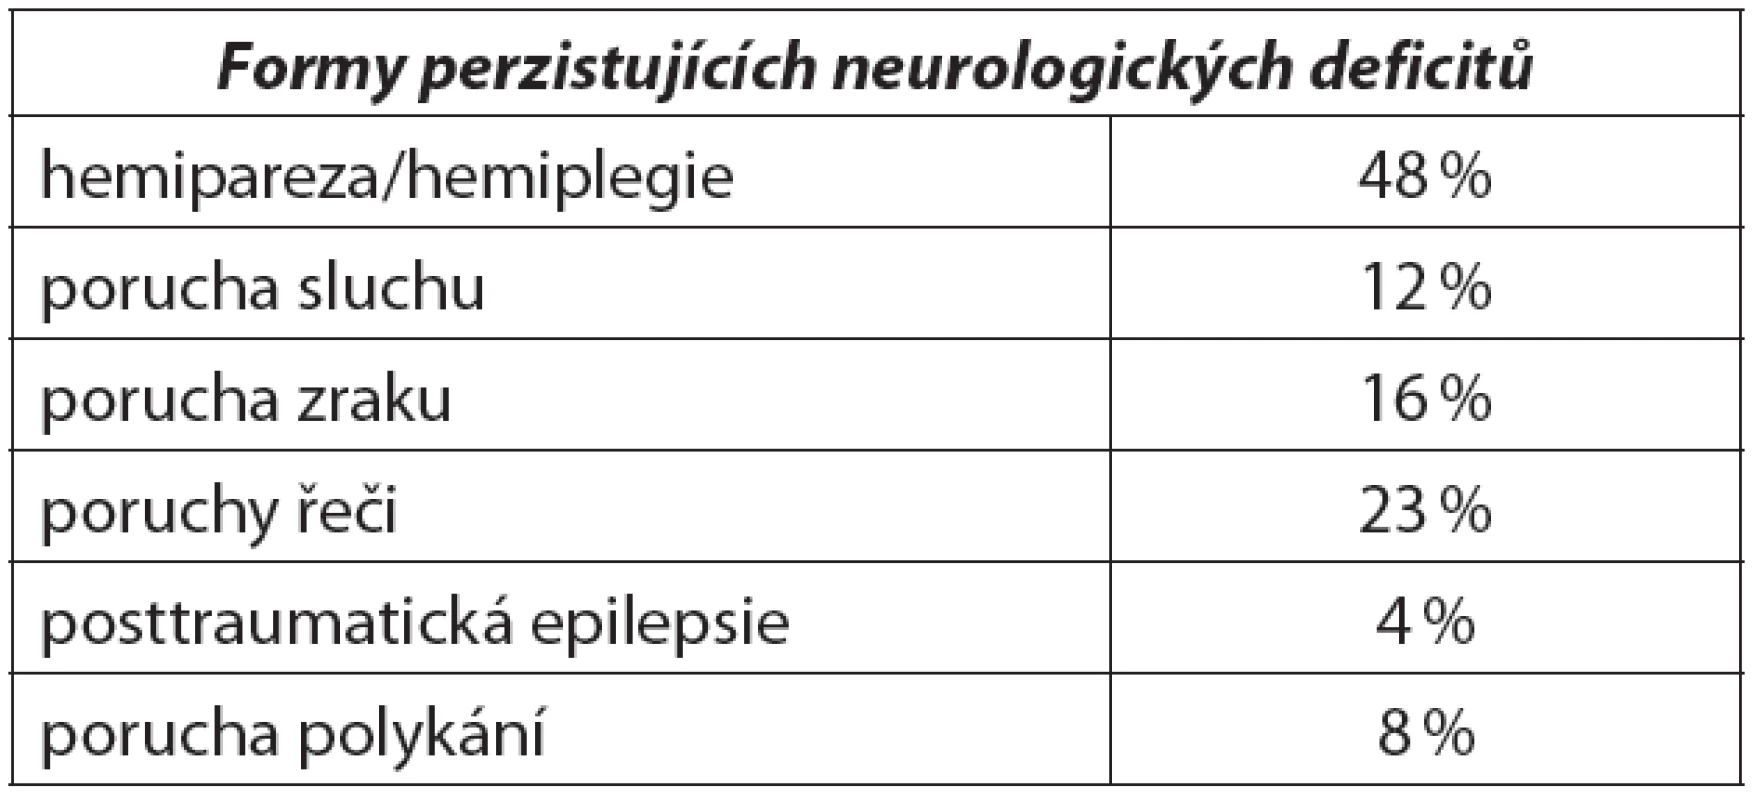 Formy perzistujících neurologických deficitů